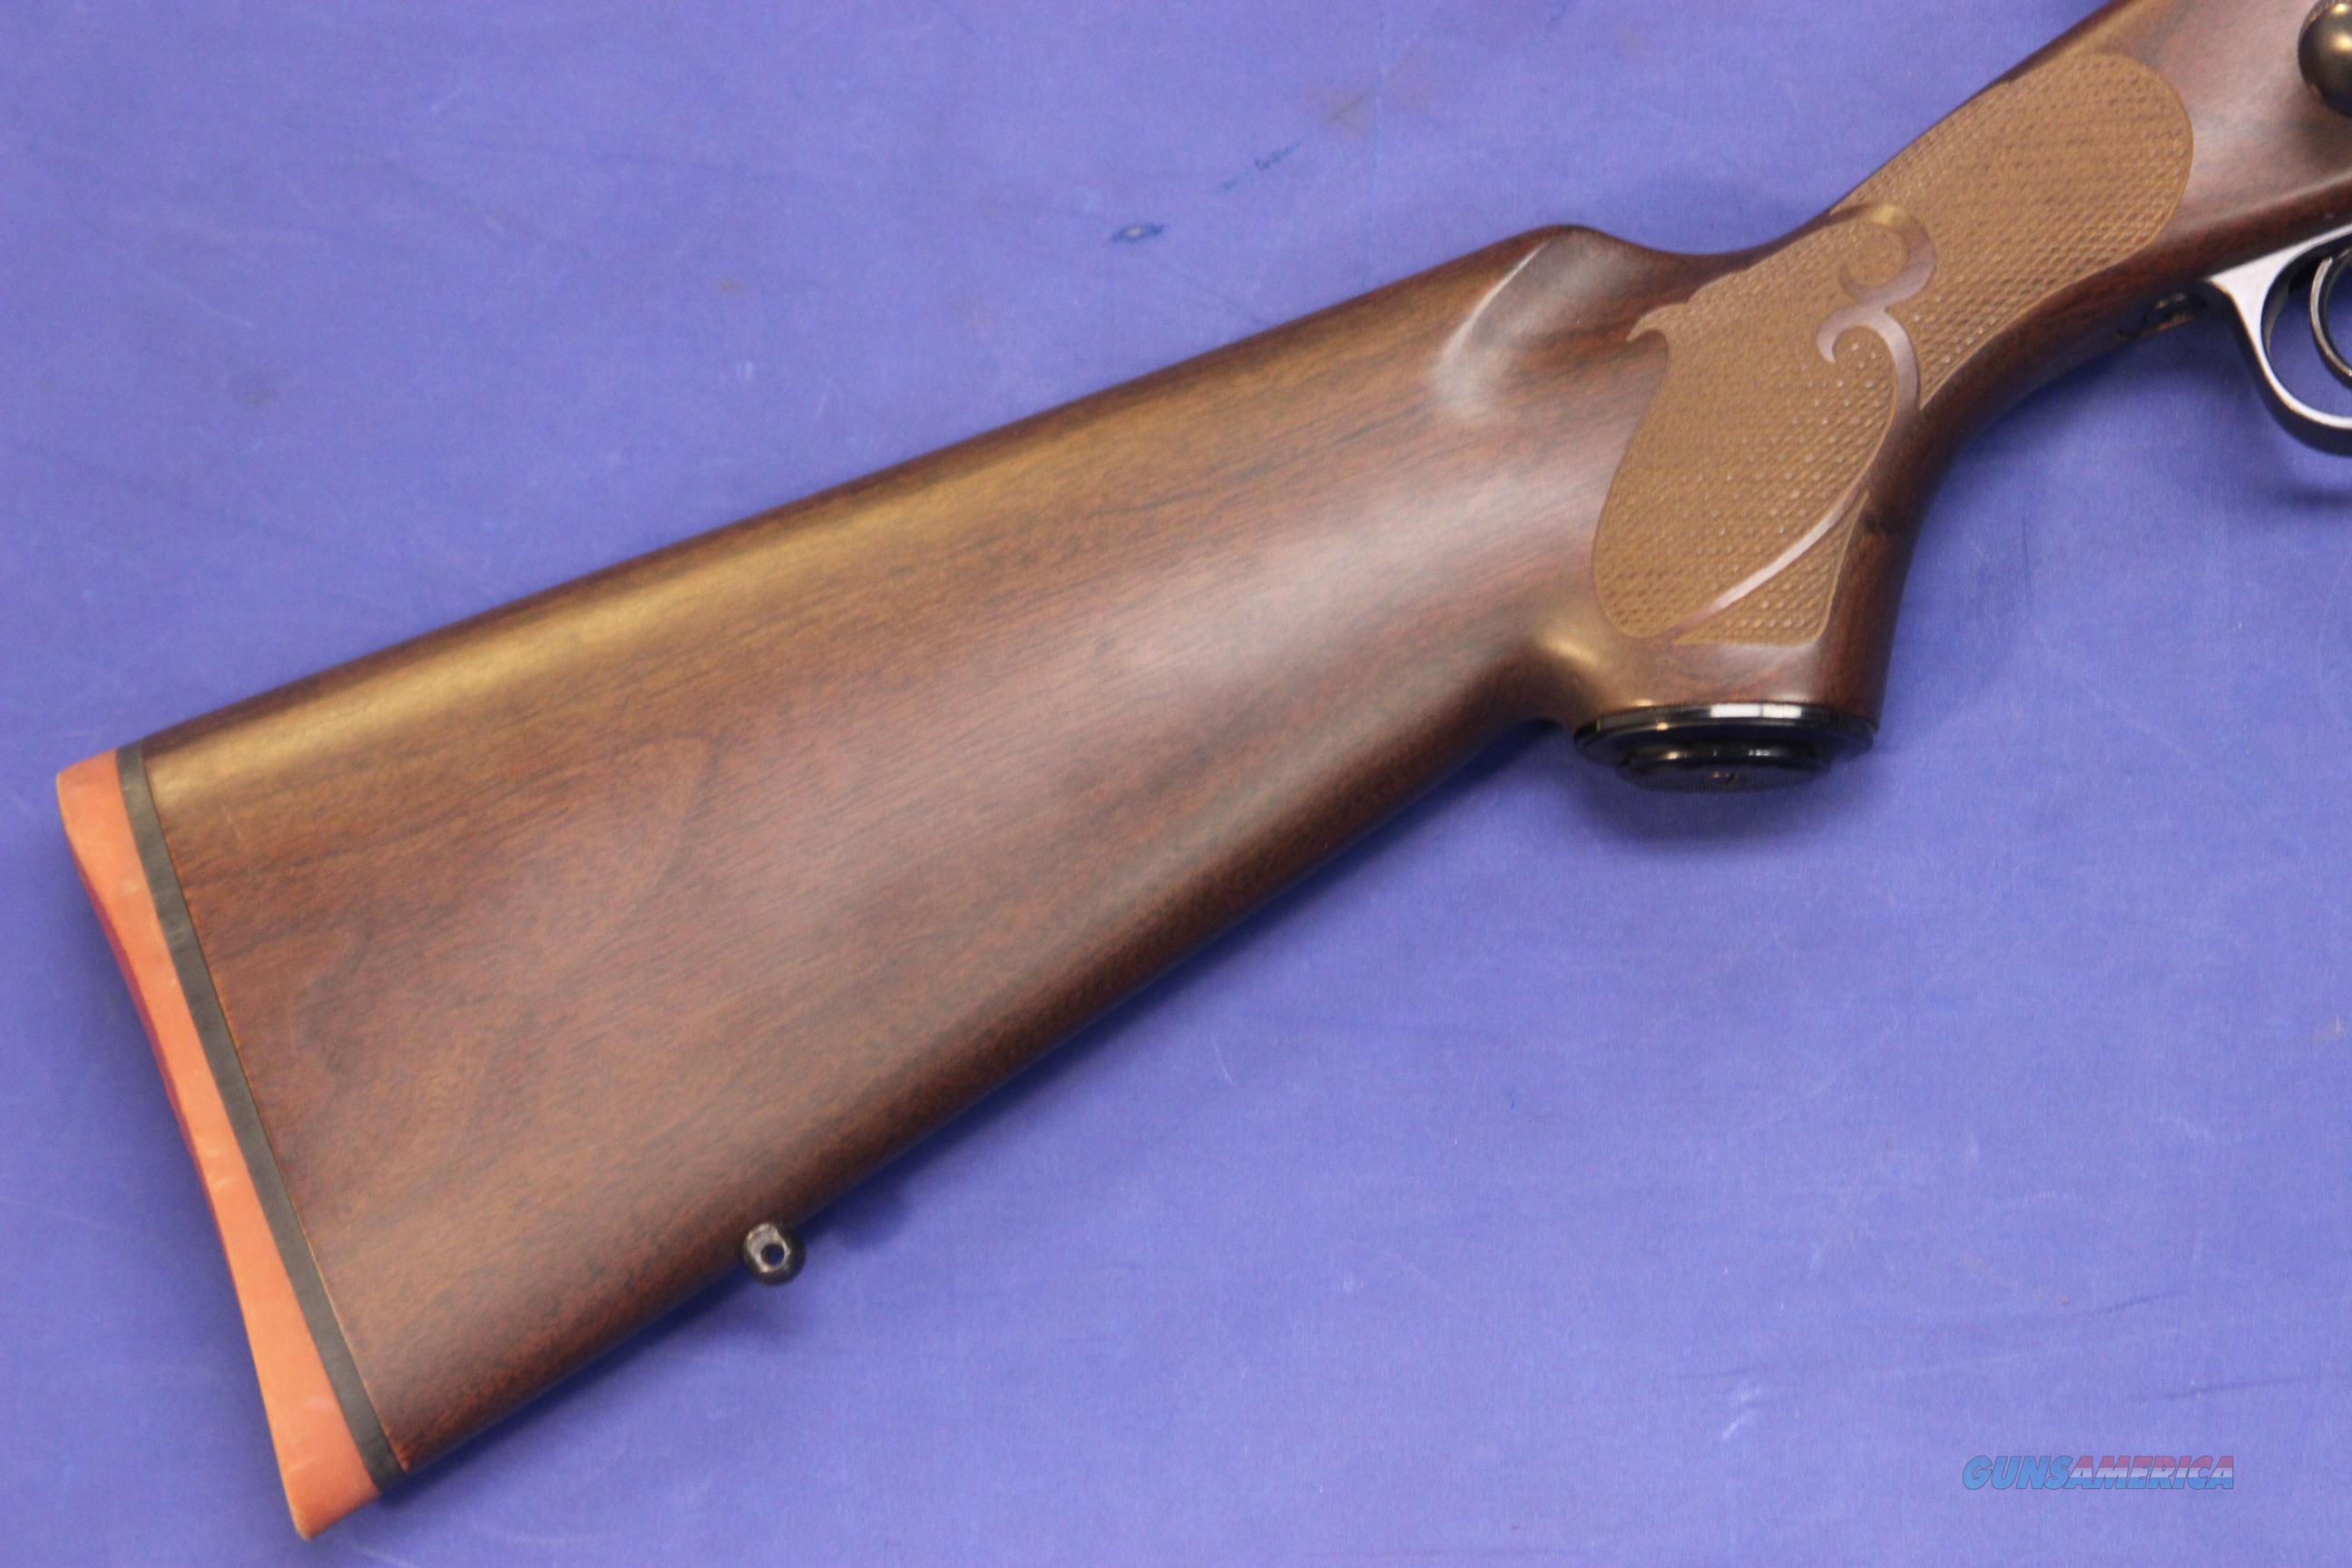 datování Winchester model 12